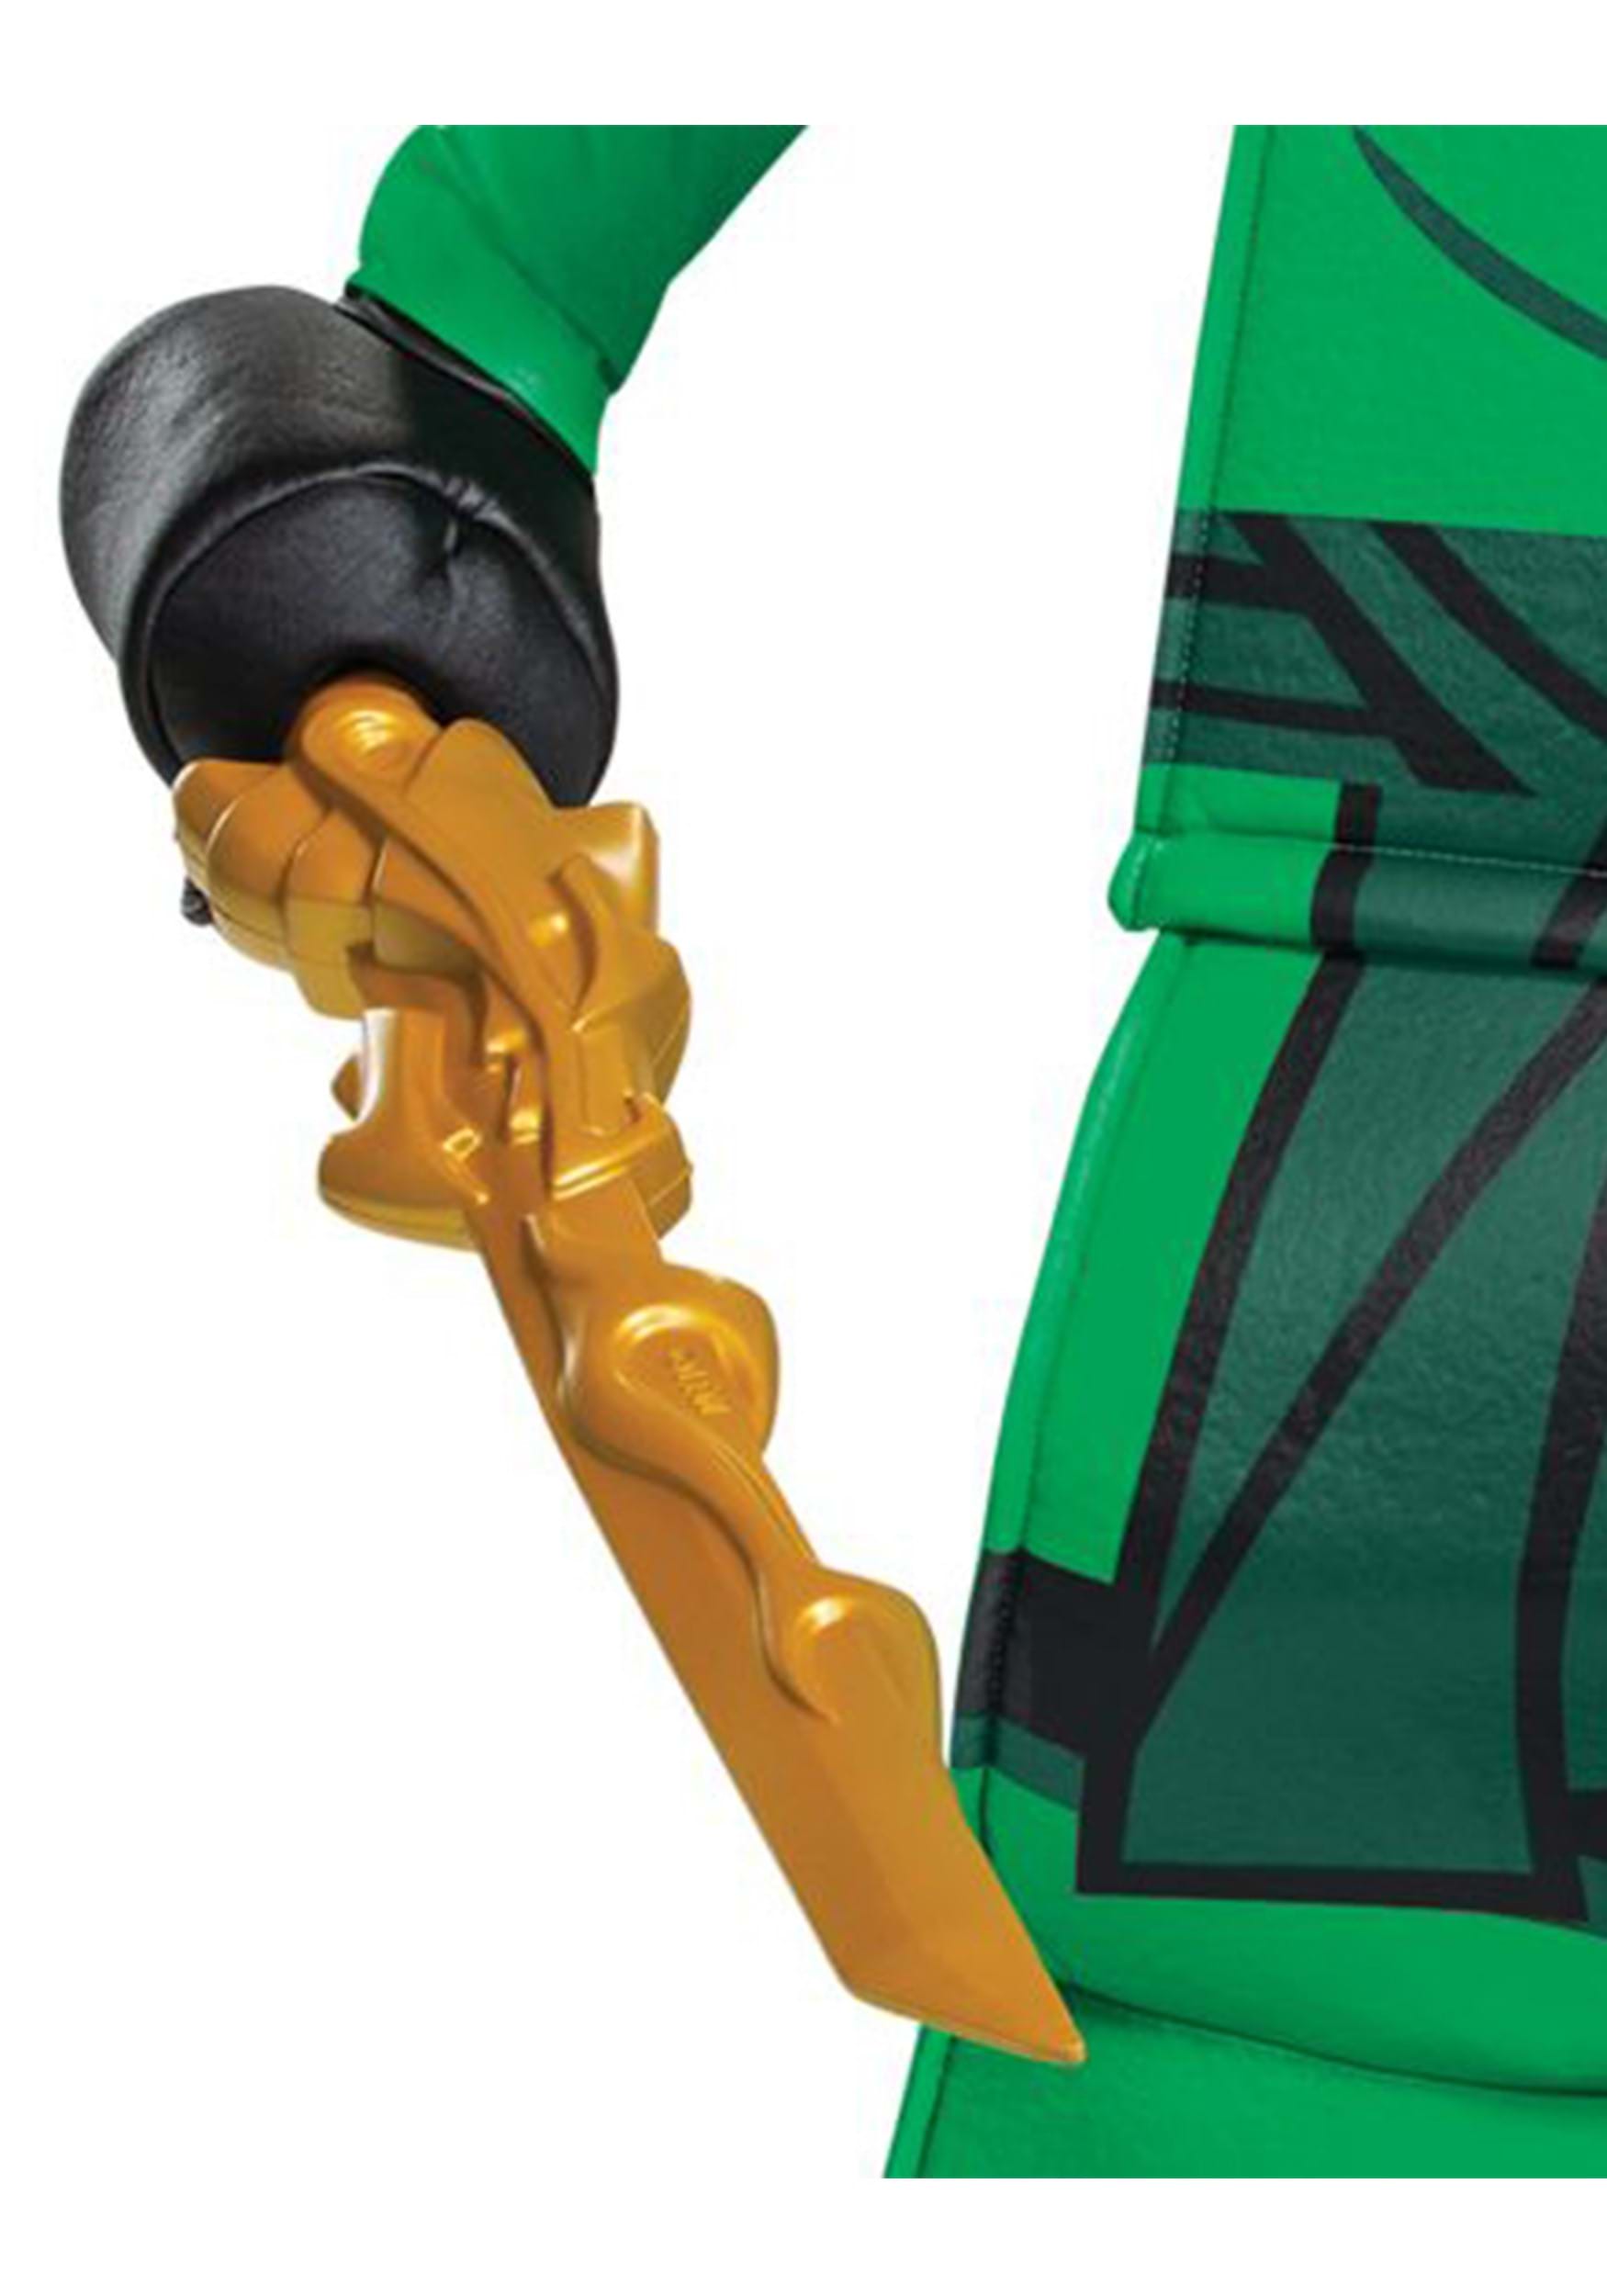 Boy's LEGO Ninjago Lloyd Legacy Prestige Fancy Dress Costume